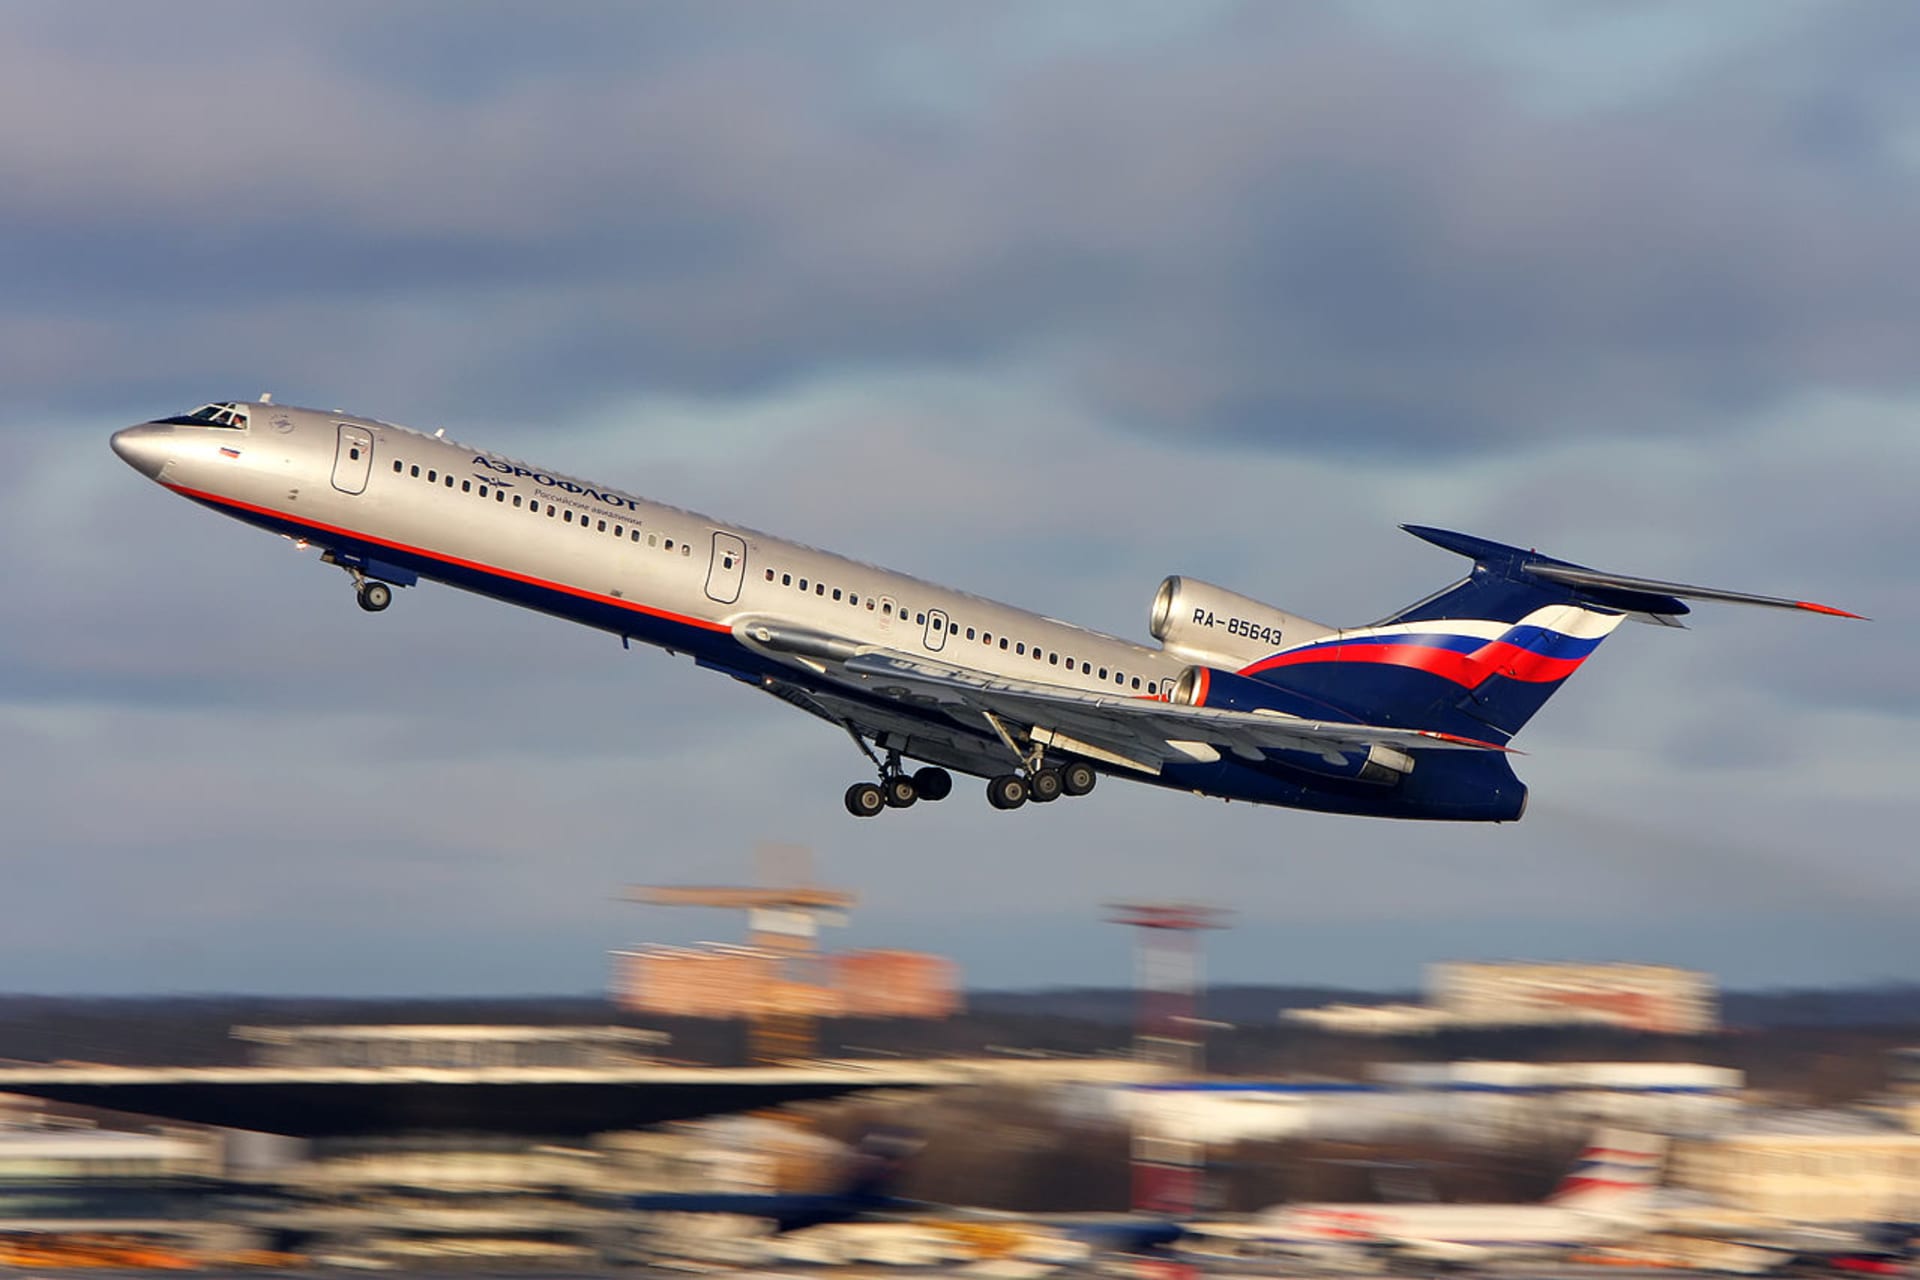 Tupolev TU-154 smrtící letoun - Aeroflot